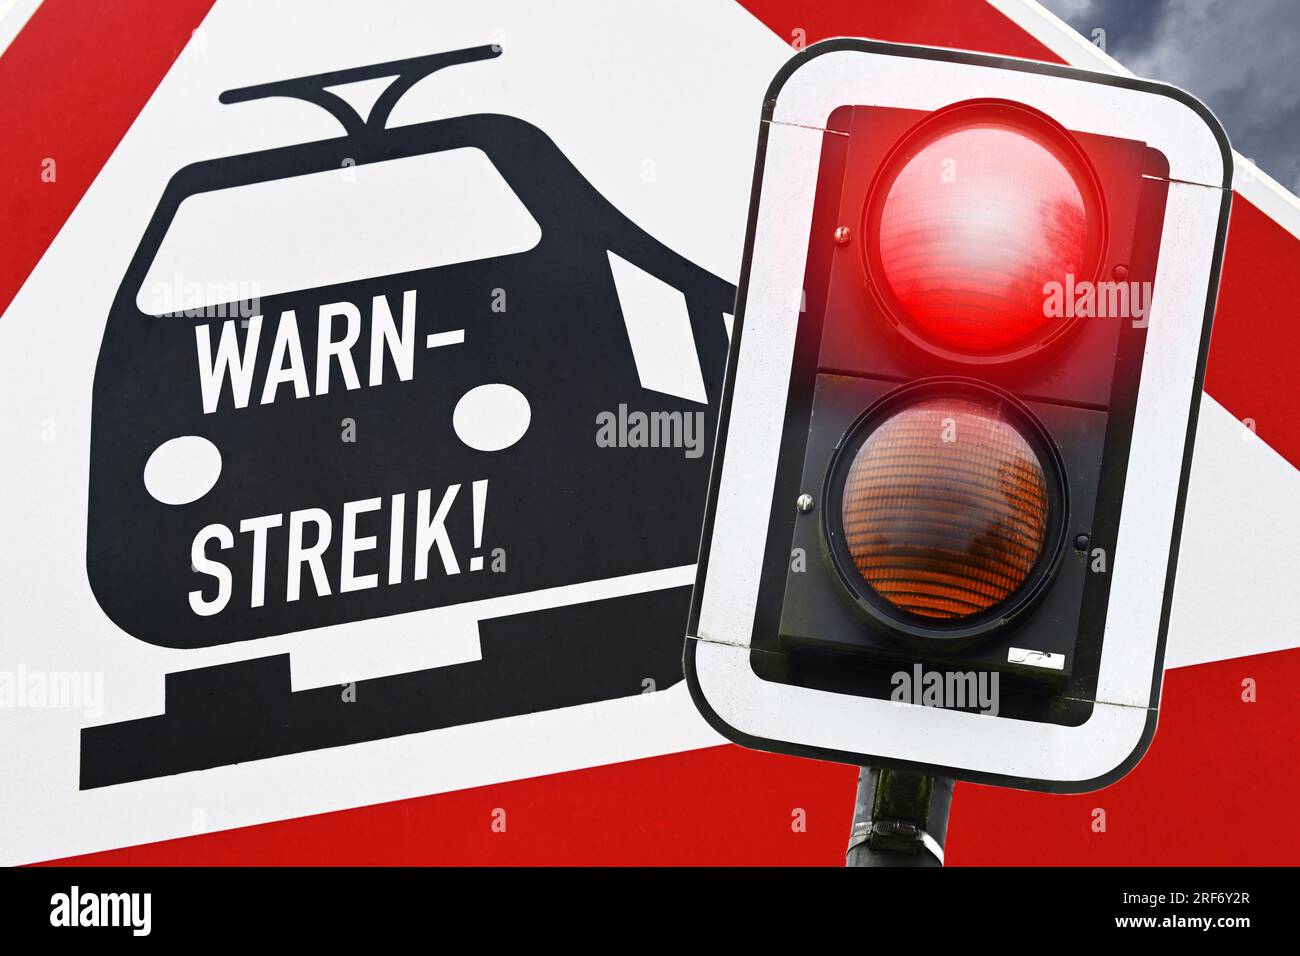 FOTOMONTAGE, Bahnschild mit Aufschrift Warnstreik und rotes Haltesignal Foto Stock